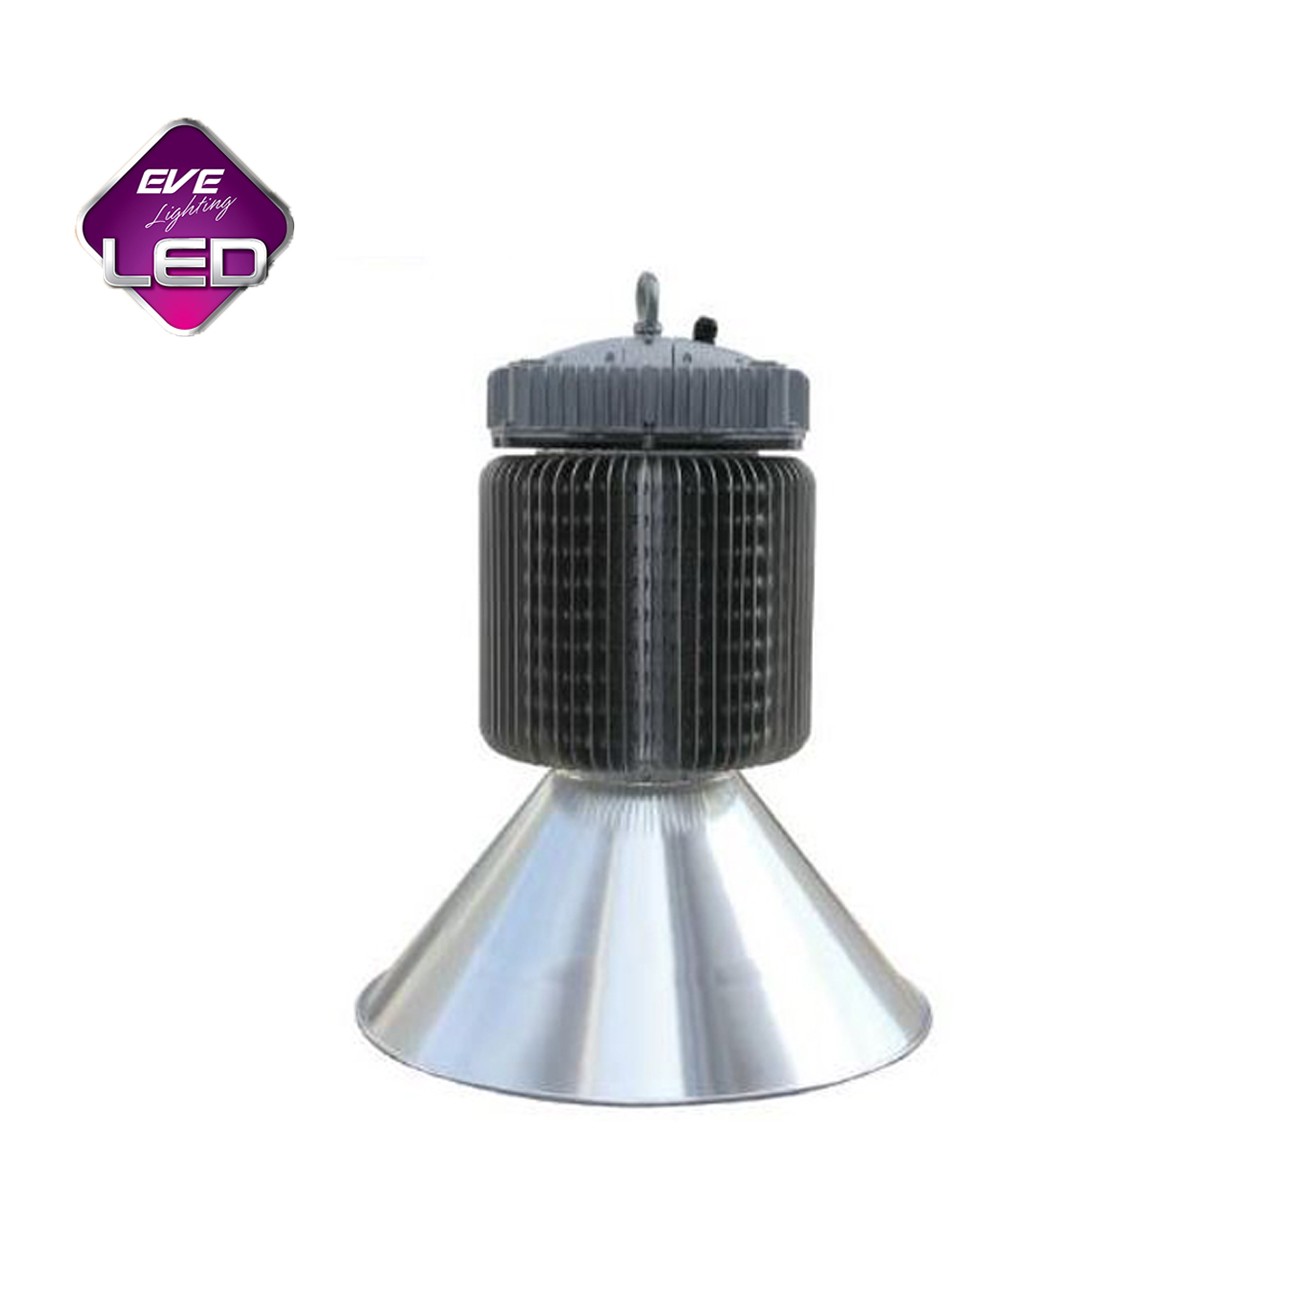 โคมไฮเบย์ LED (LUX-HB) 300W (เดย์ไลท์) EVE